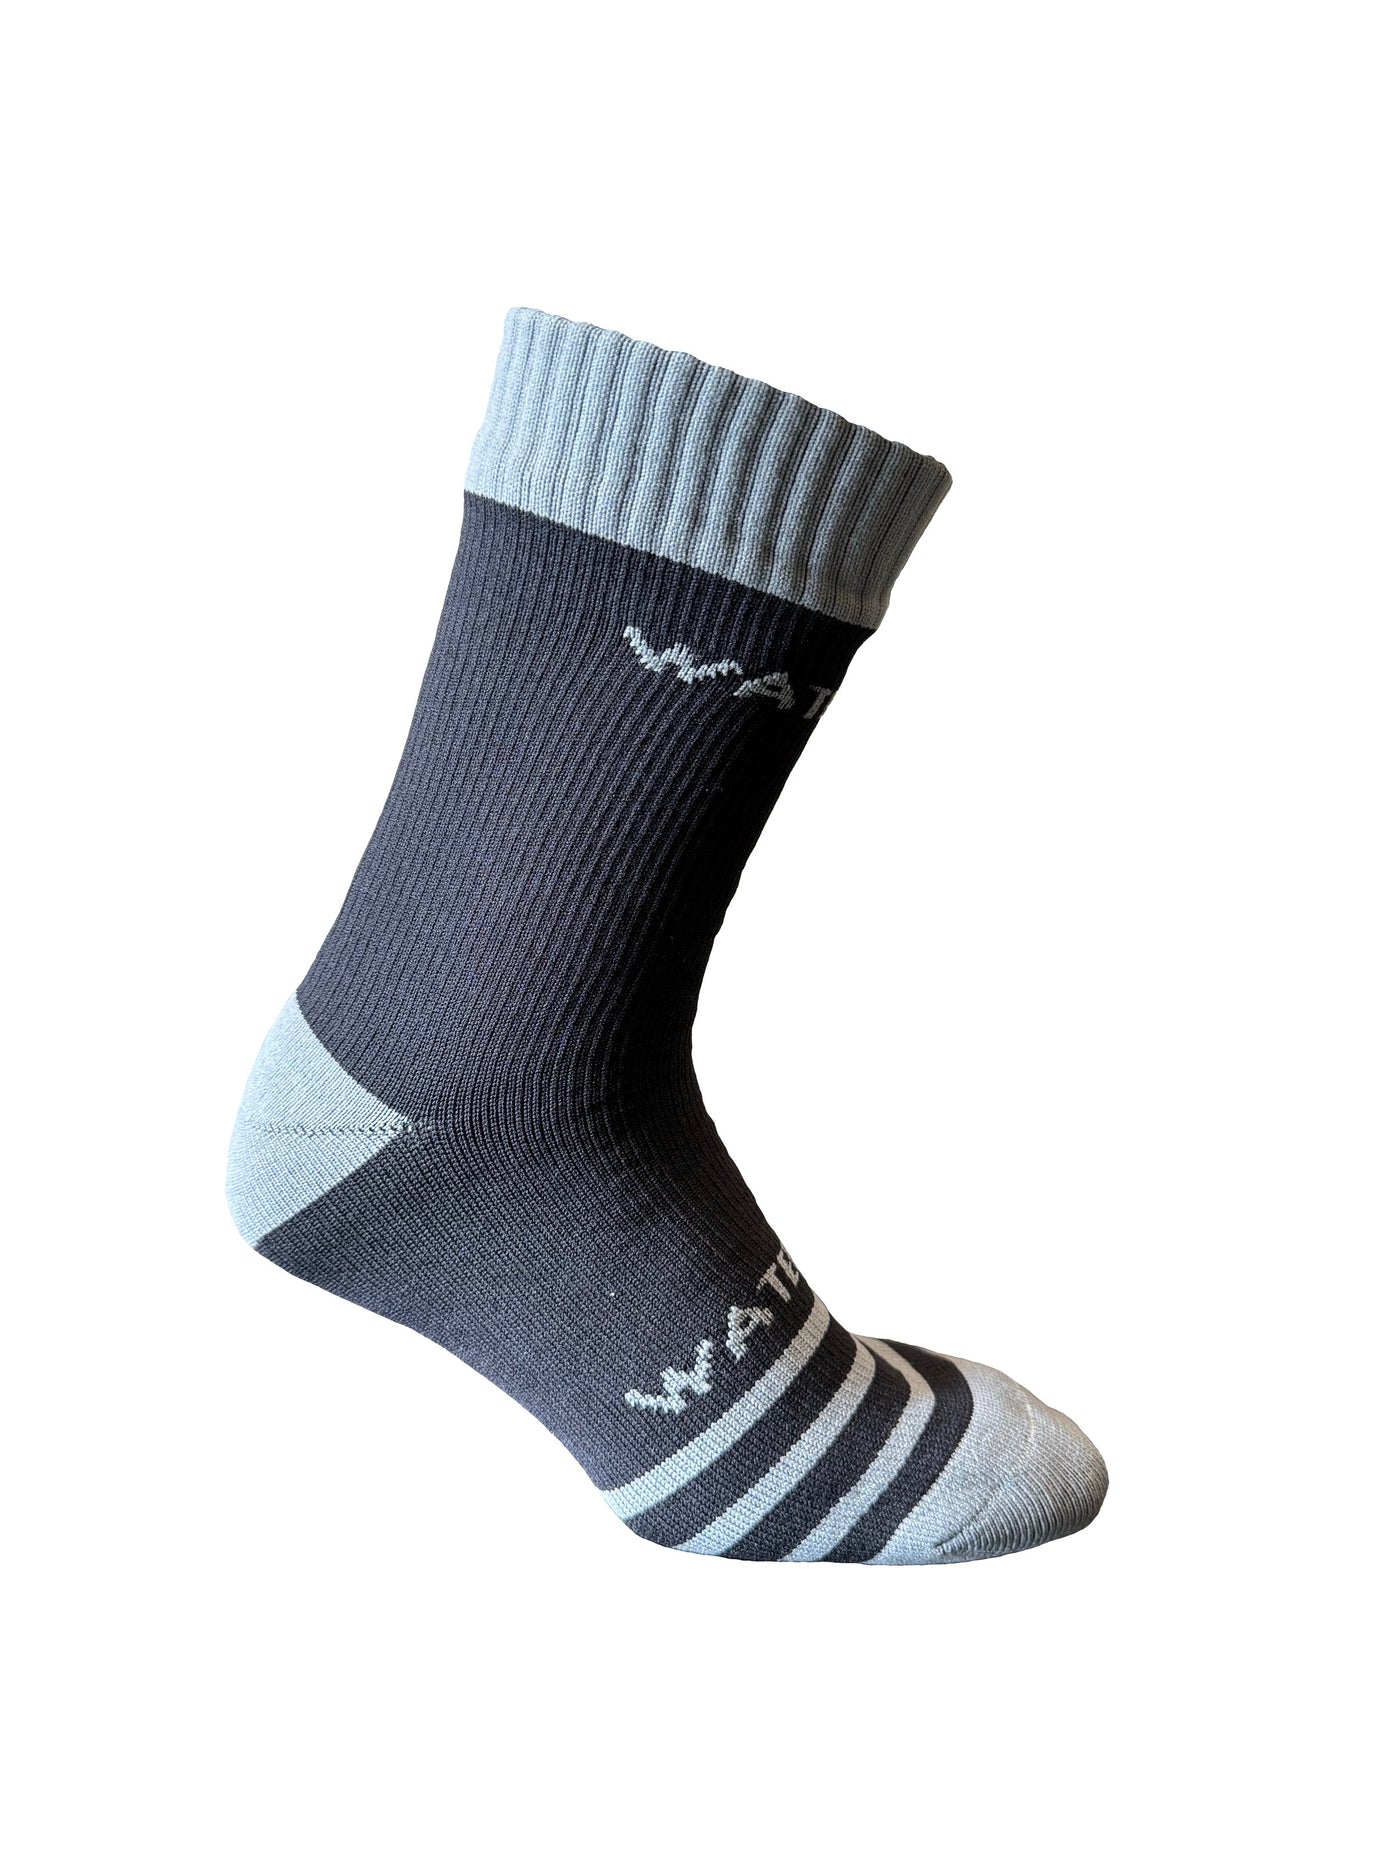 Waterproof Breathable Socks- Black/Grey